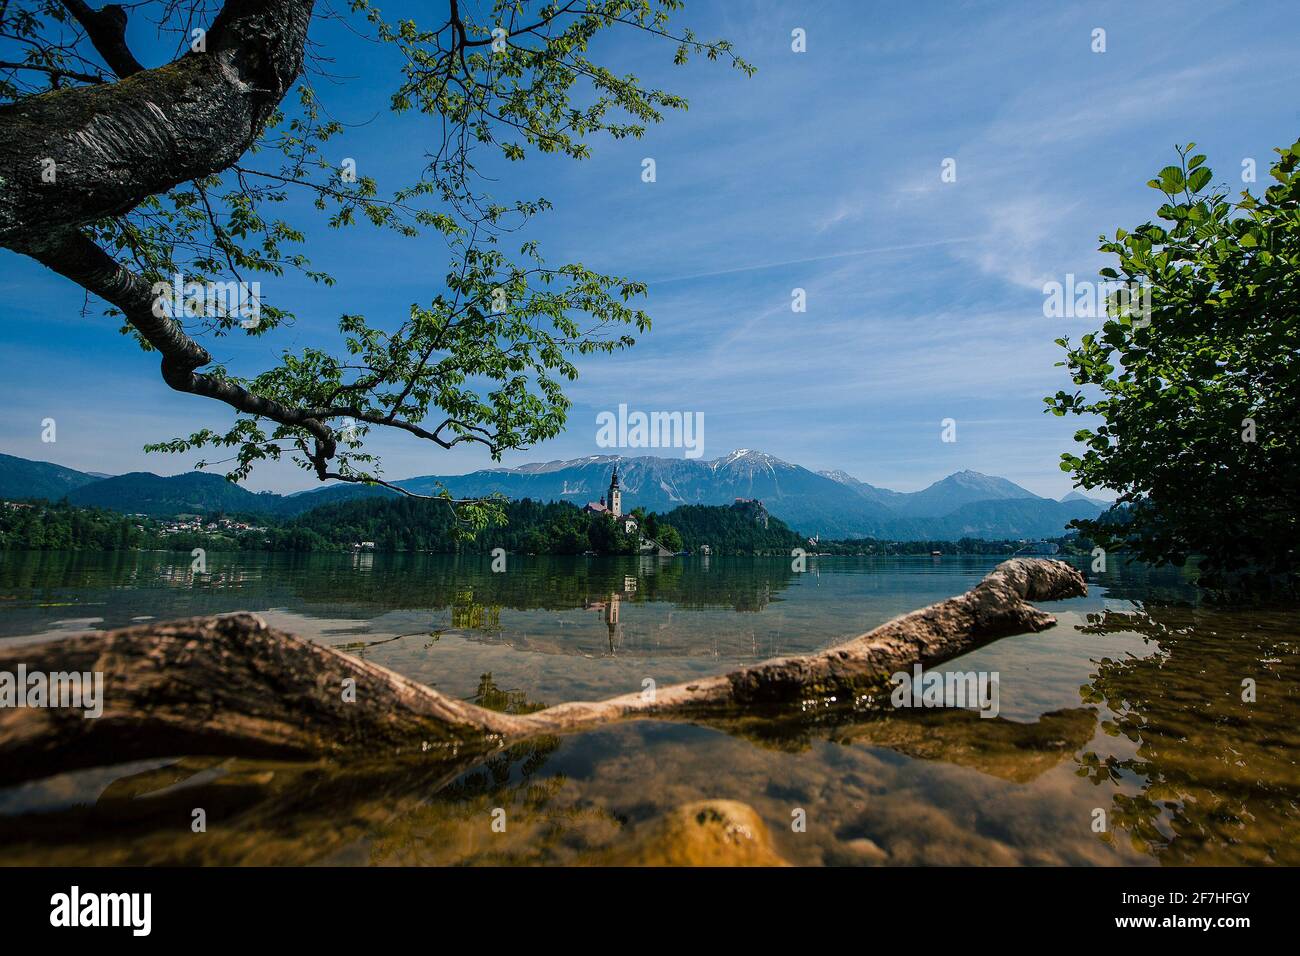 Panorama de l'île Bled avec église par une journée ensoleillée. Photo à profil bas, avec arbre et branche dans l'eau au premier plan. Magnifique panorama naturel Banque D'Images